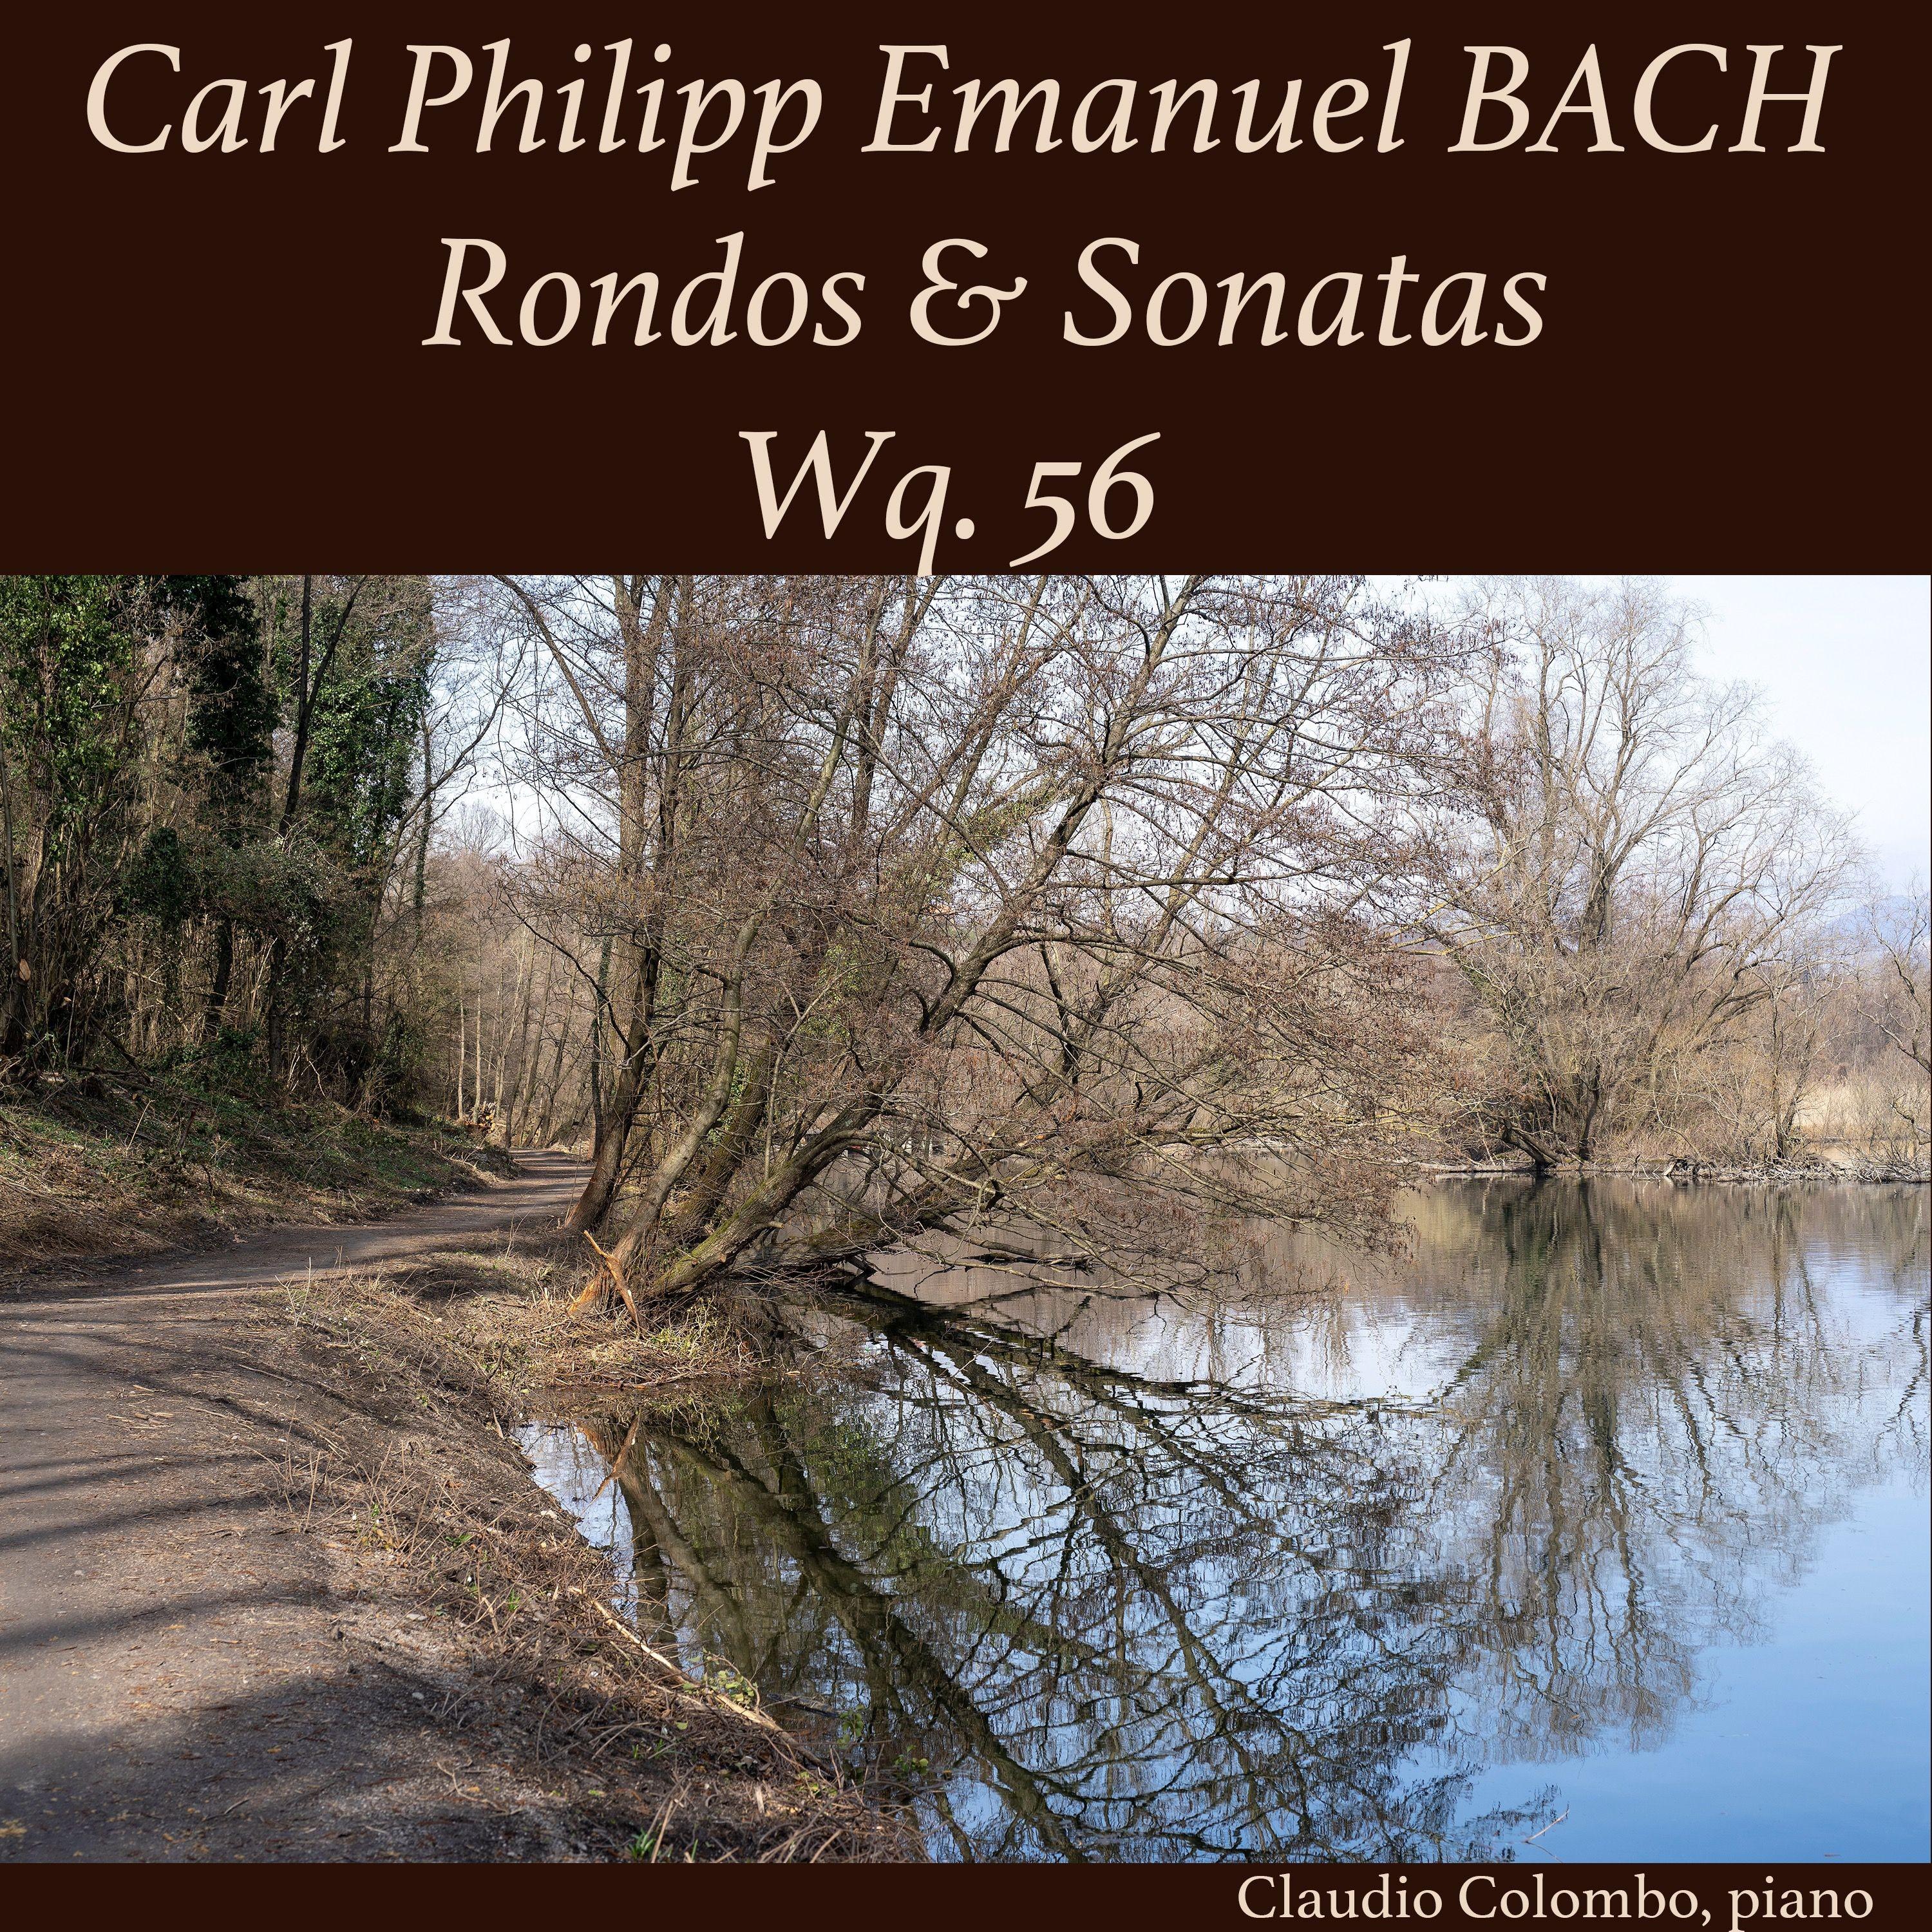 3 Sonaten und 3 Rondos fü r Kenner und Liebhaber, Wq. 56: Sonata I in G Major, I. Allegretto